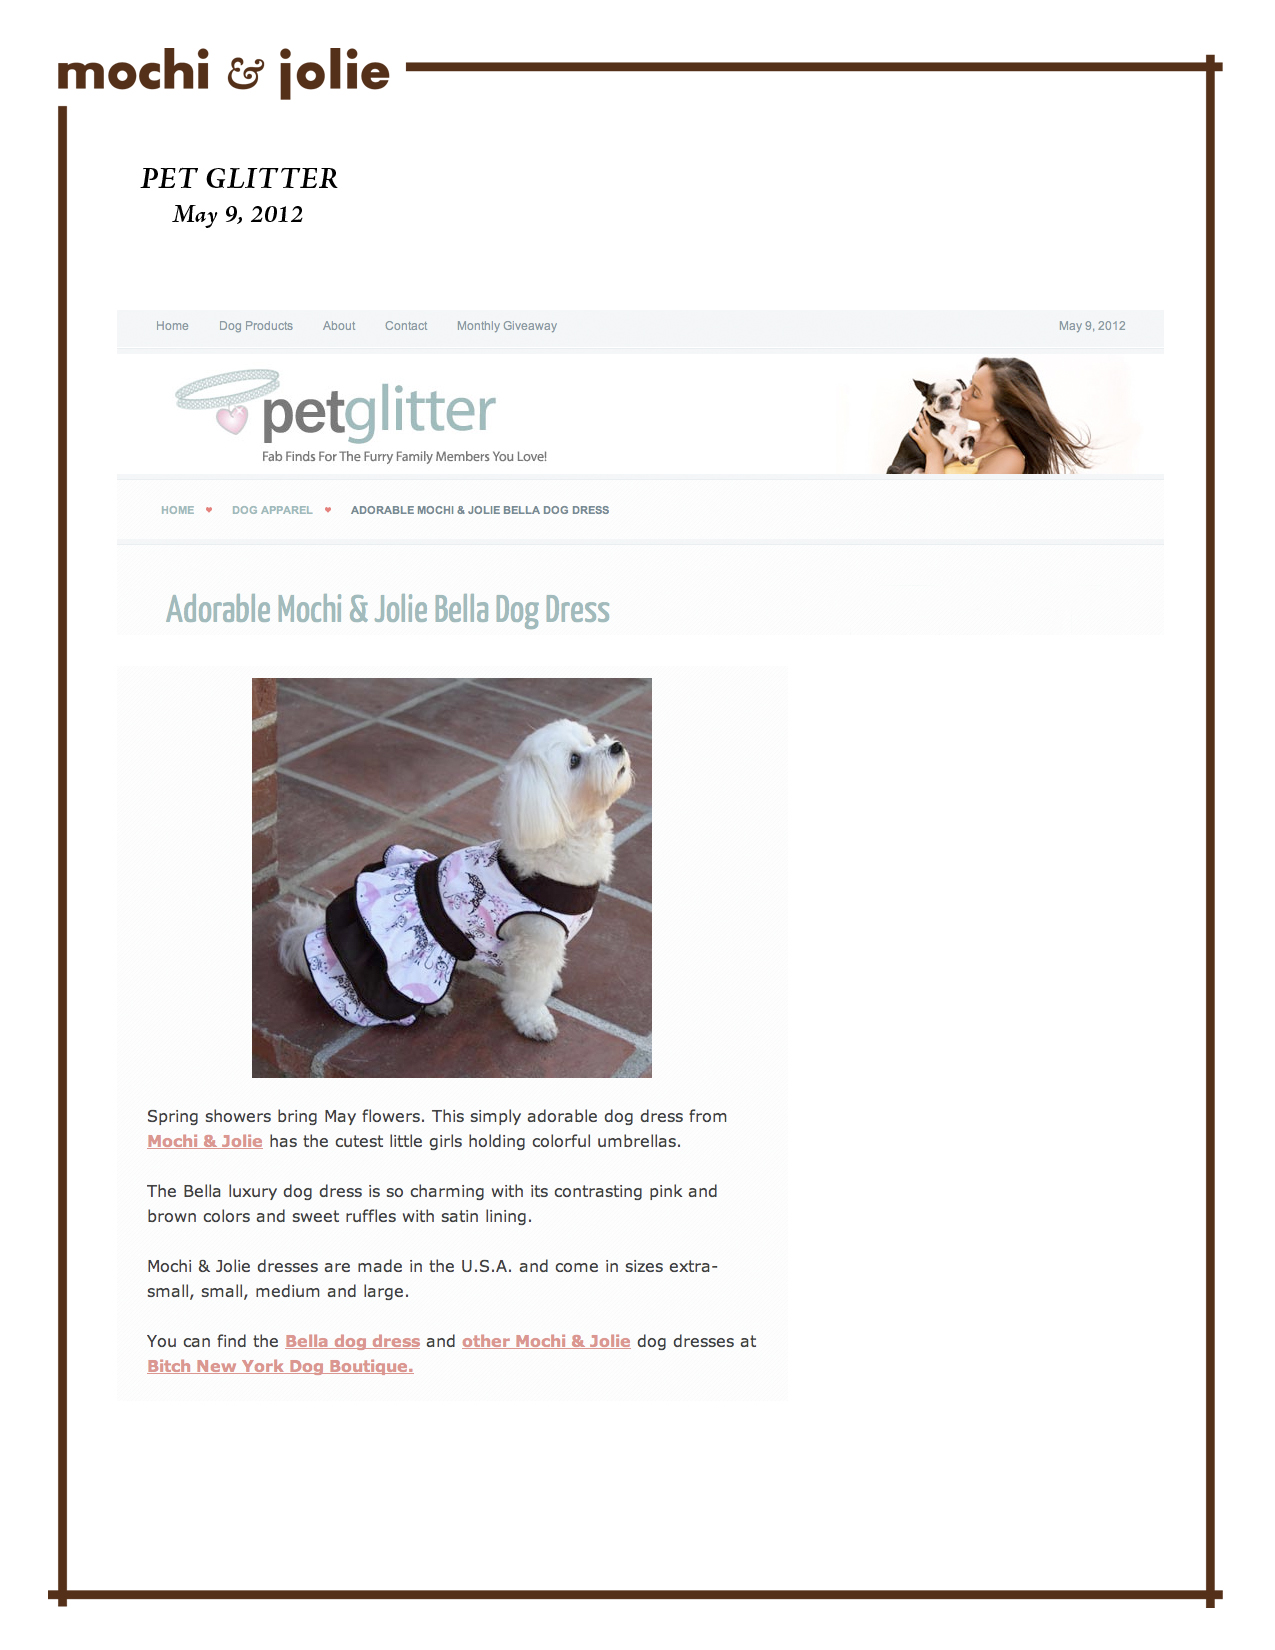 Pet Glitter (May 9, 2012)